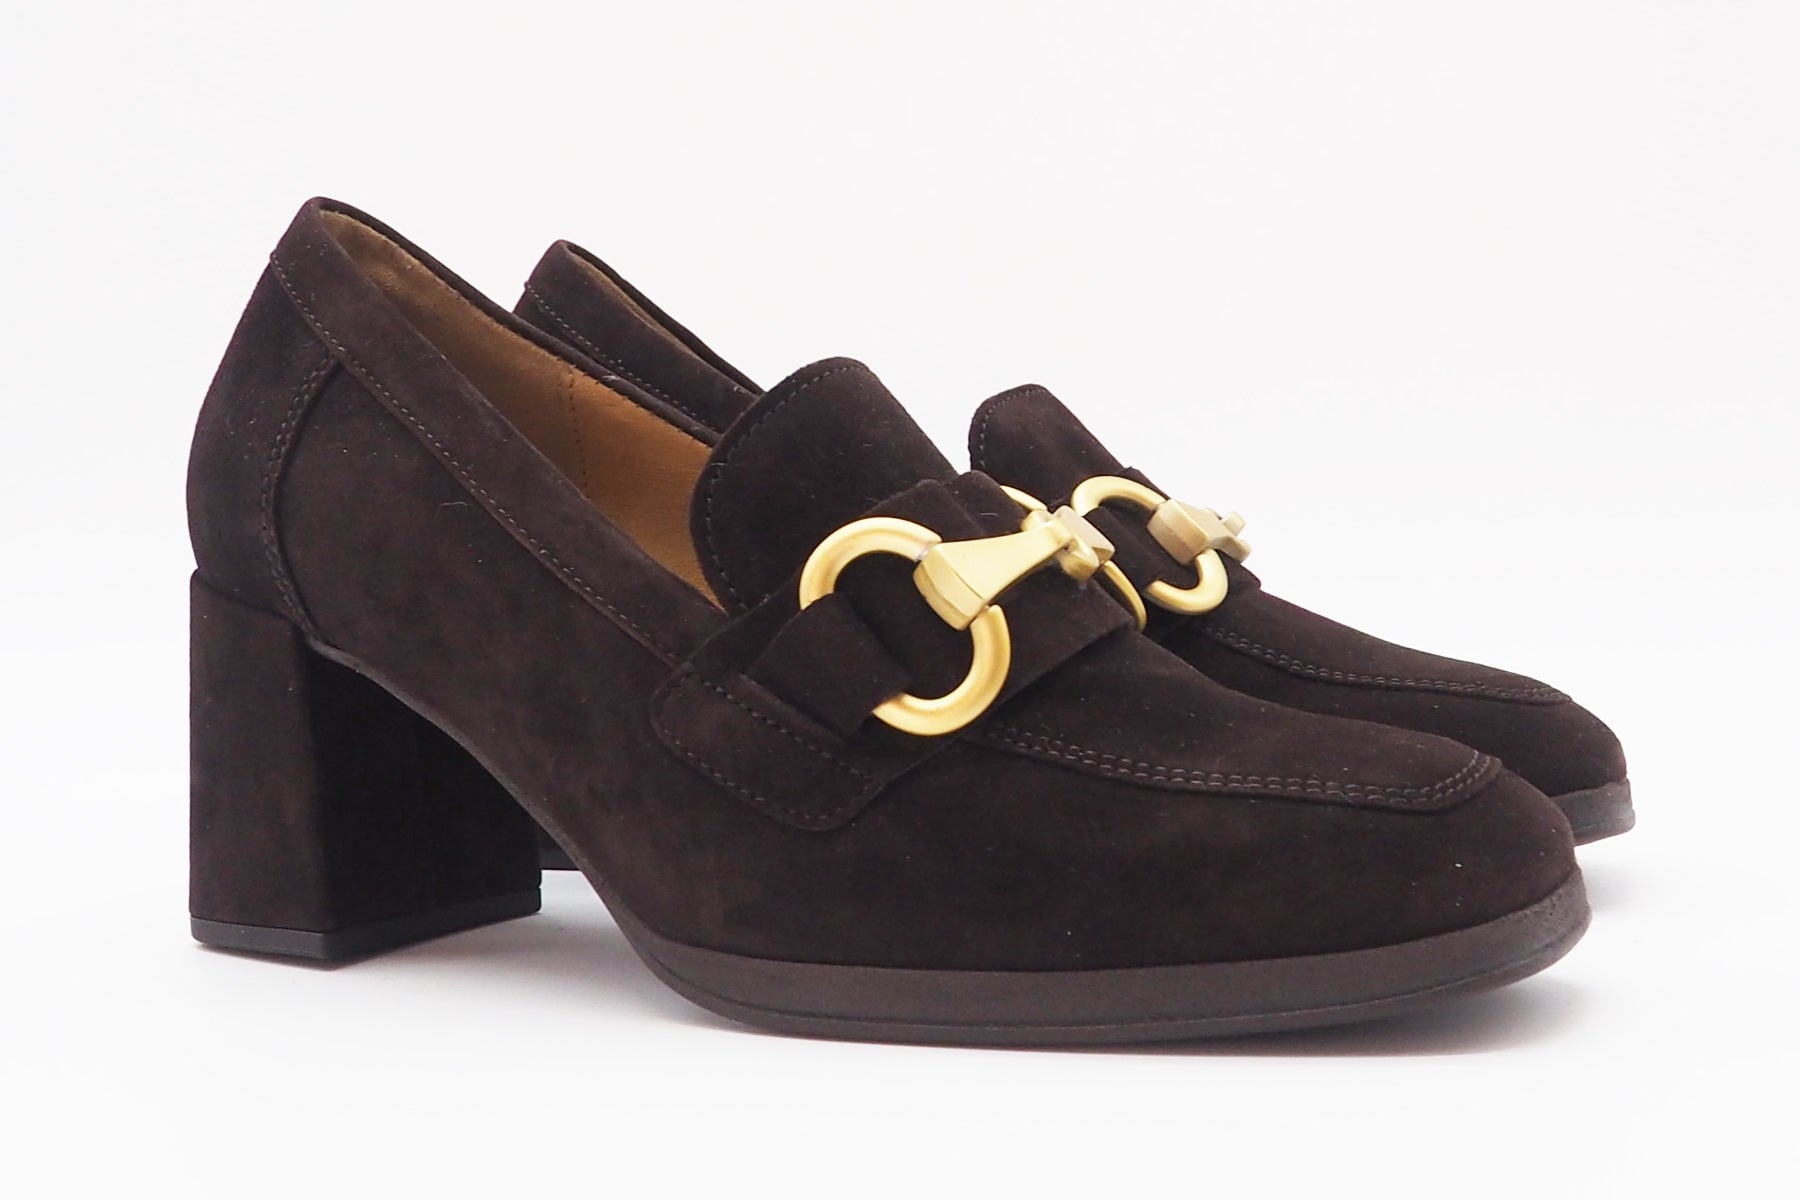 Damen Absatz-Loafer aus Veloursleder in Braun - Absatz 7cm Damen Loafers & Schnürer Gabor 